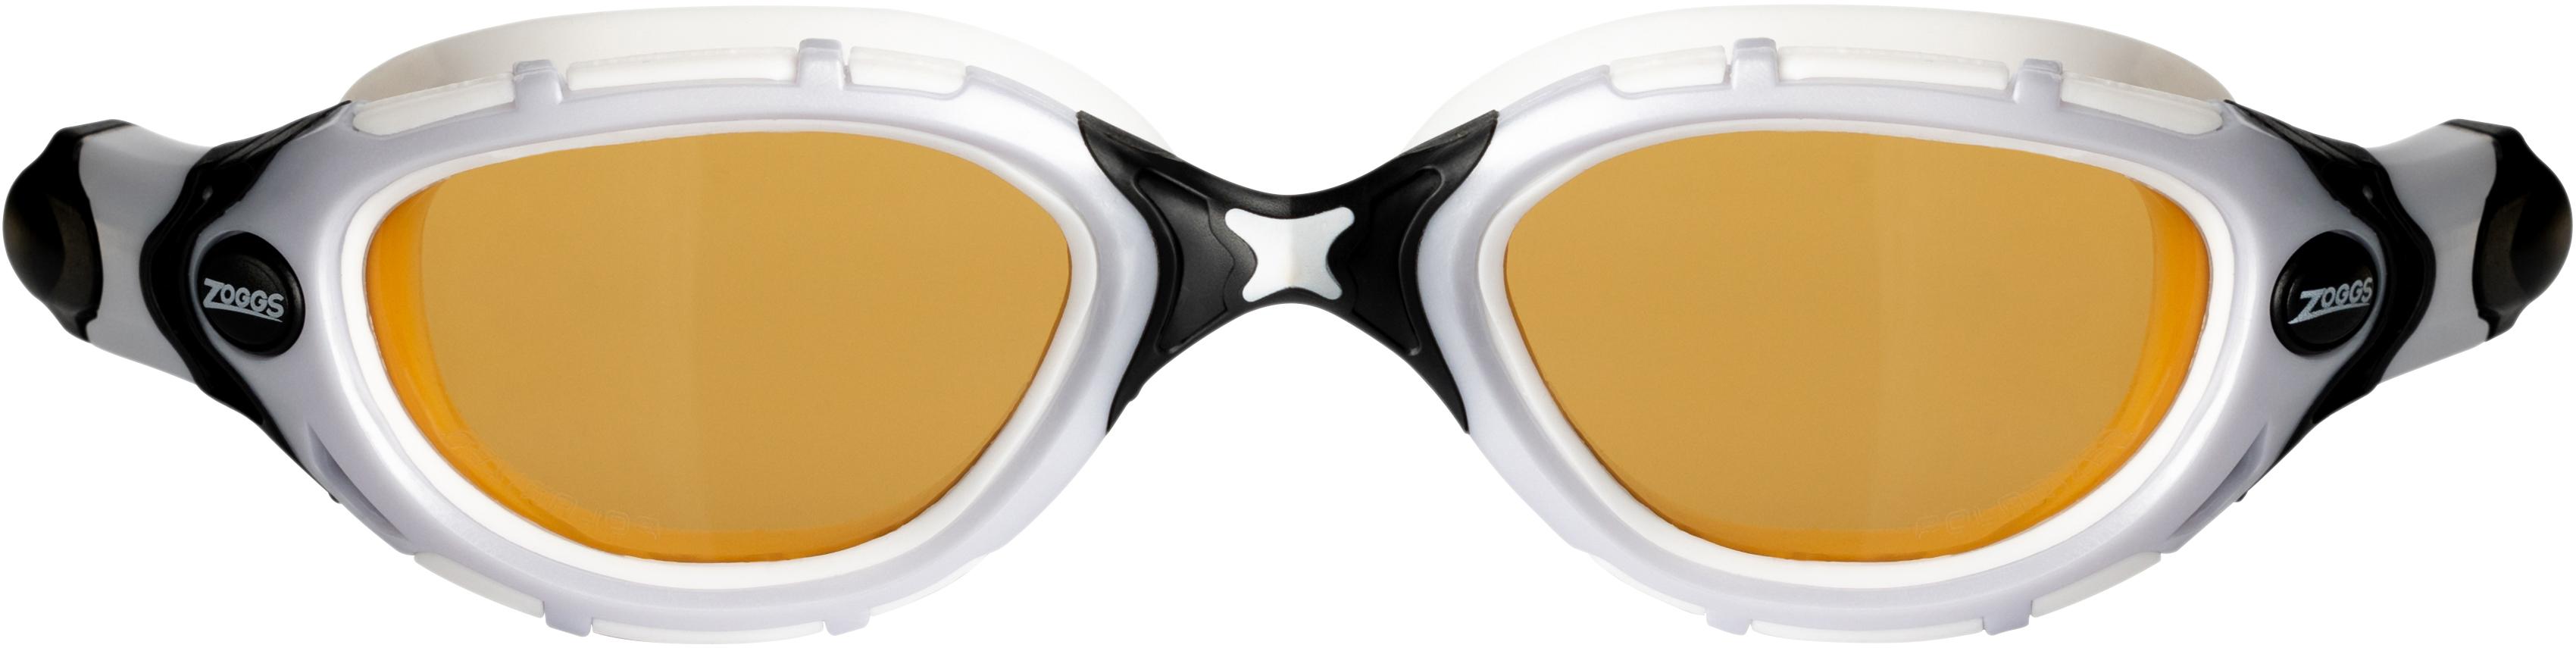 Zoggs Original Predator Flex Polarized Ultra Goggle - White/black/polarized Copper